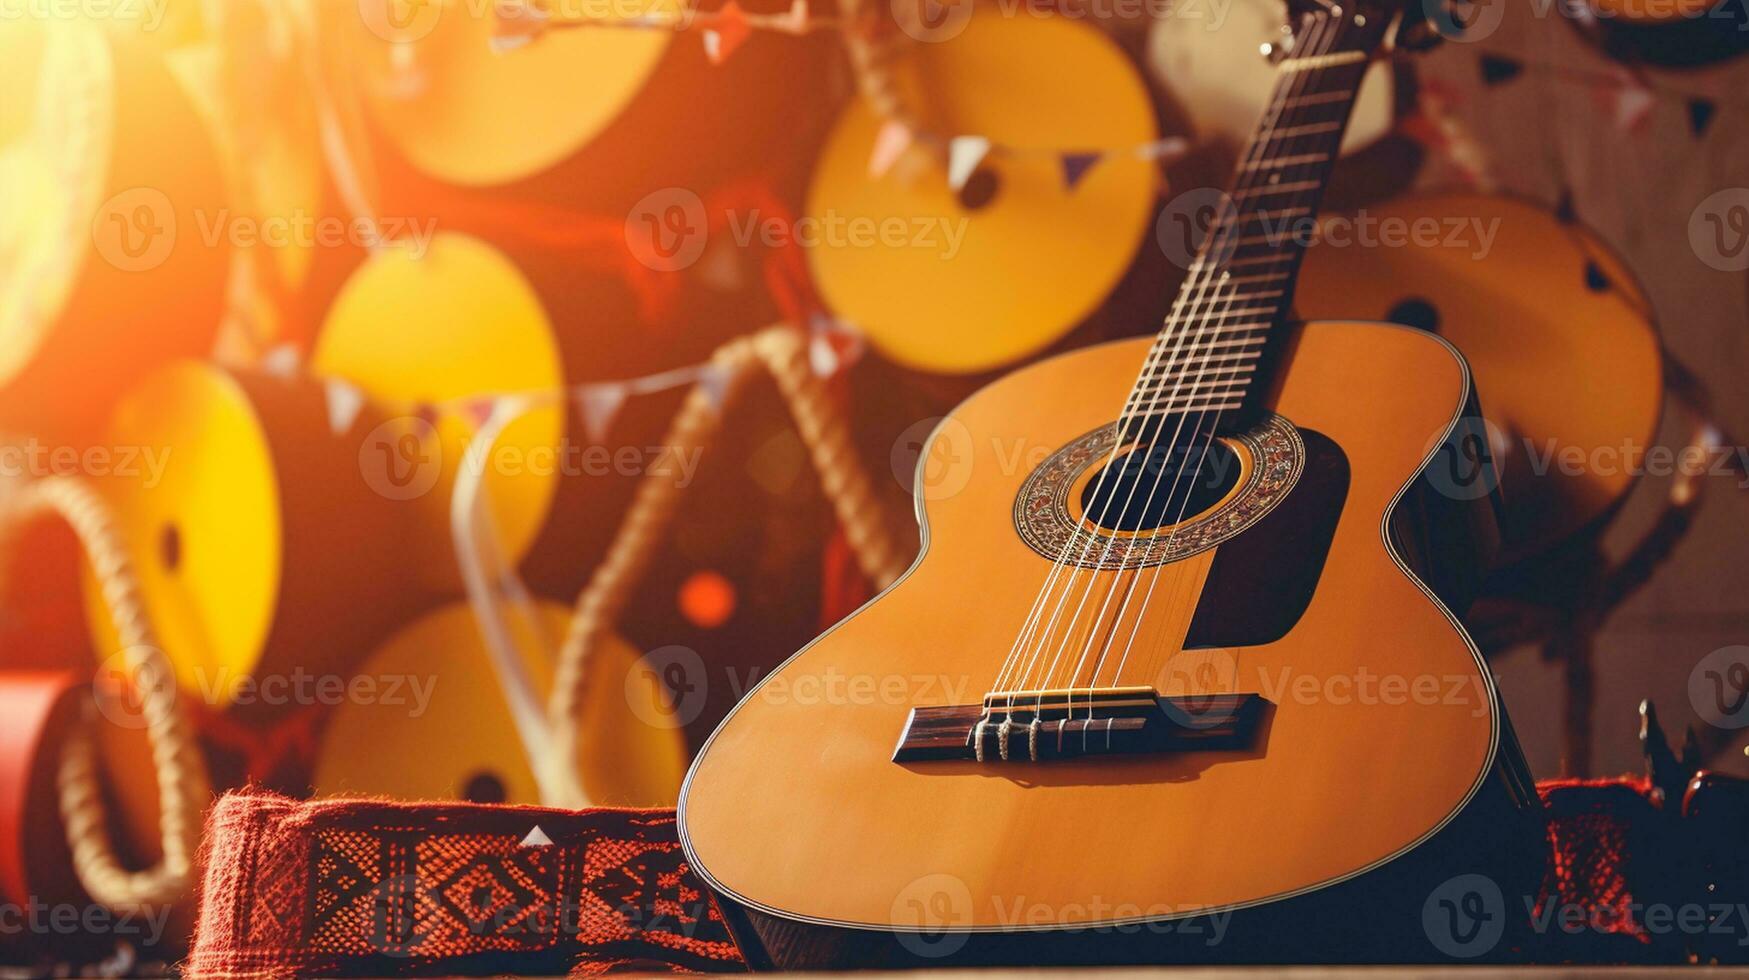 kulturell Vielfalt durch Musik- Welt Musik- Tag Feierlichkeiten foto